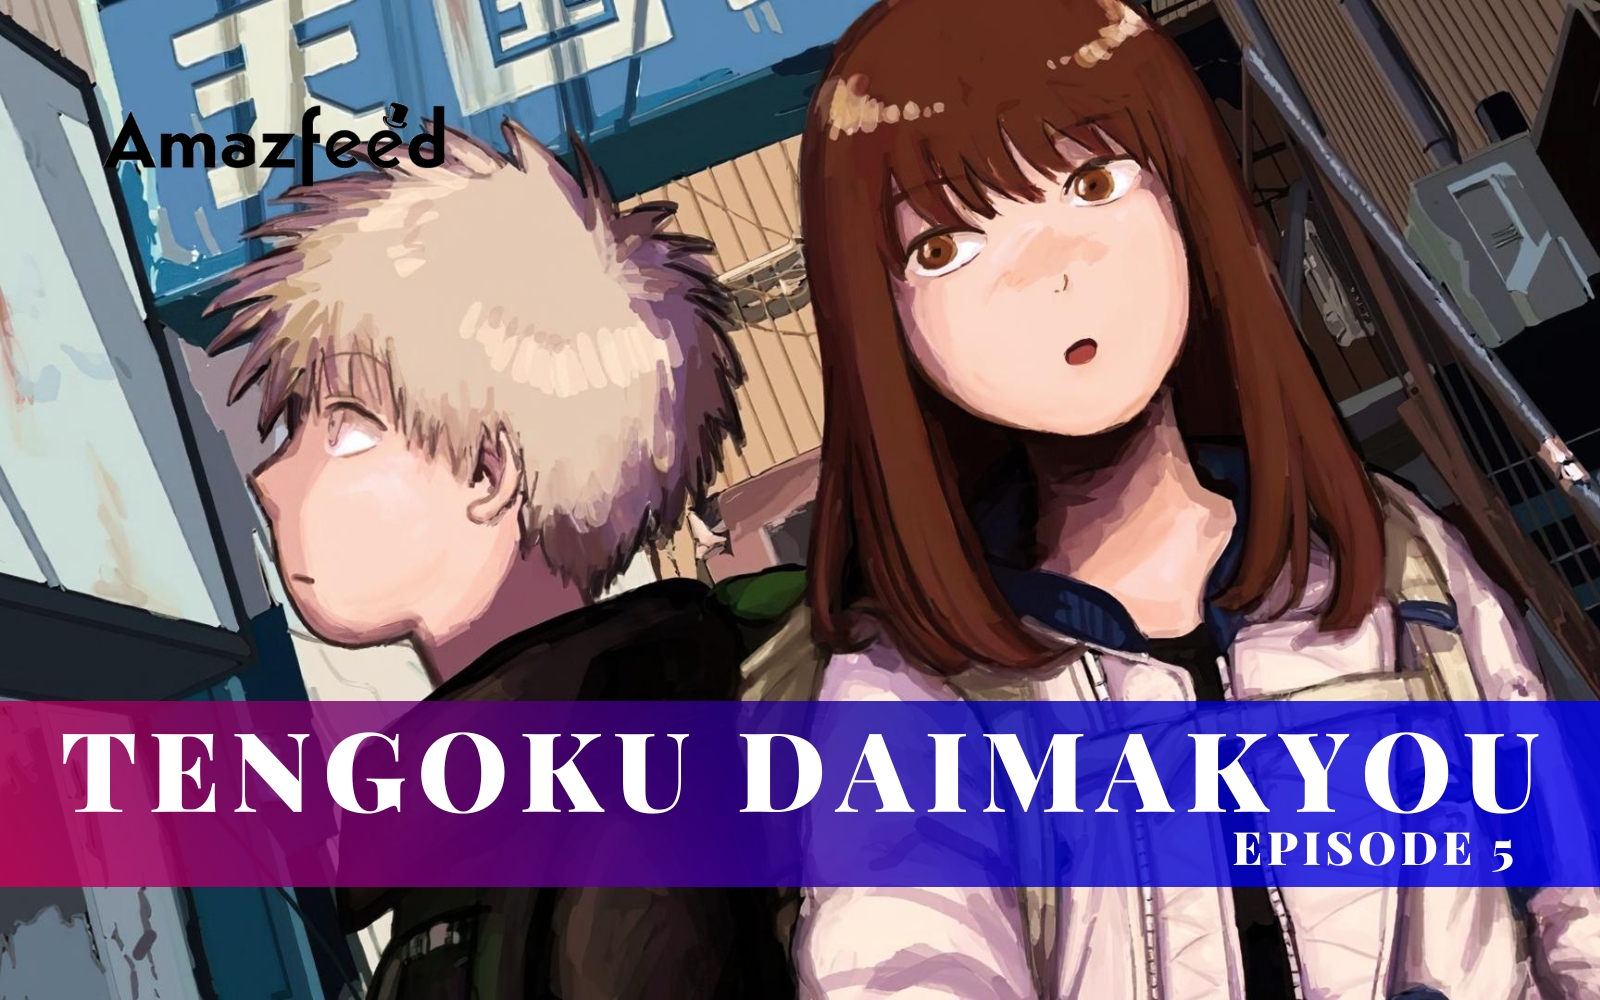 Tengoku Daimakyou episode 3: Release date and time, countdown